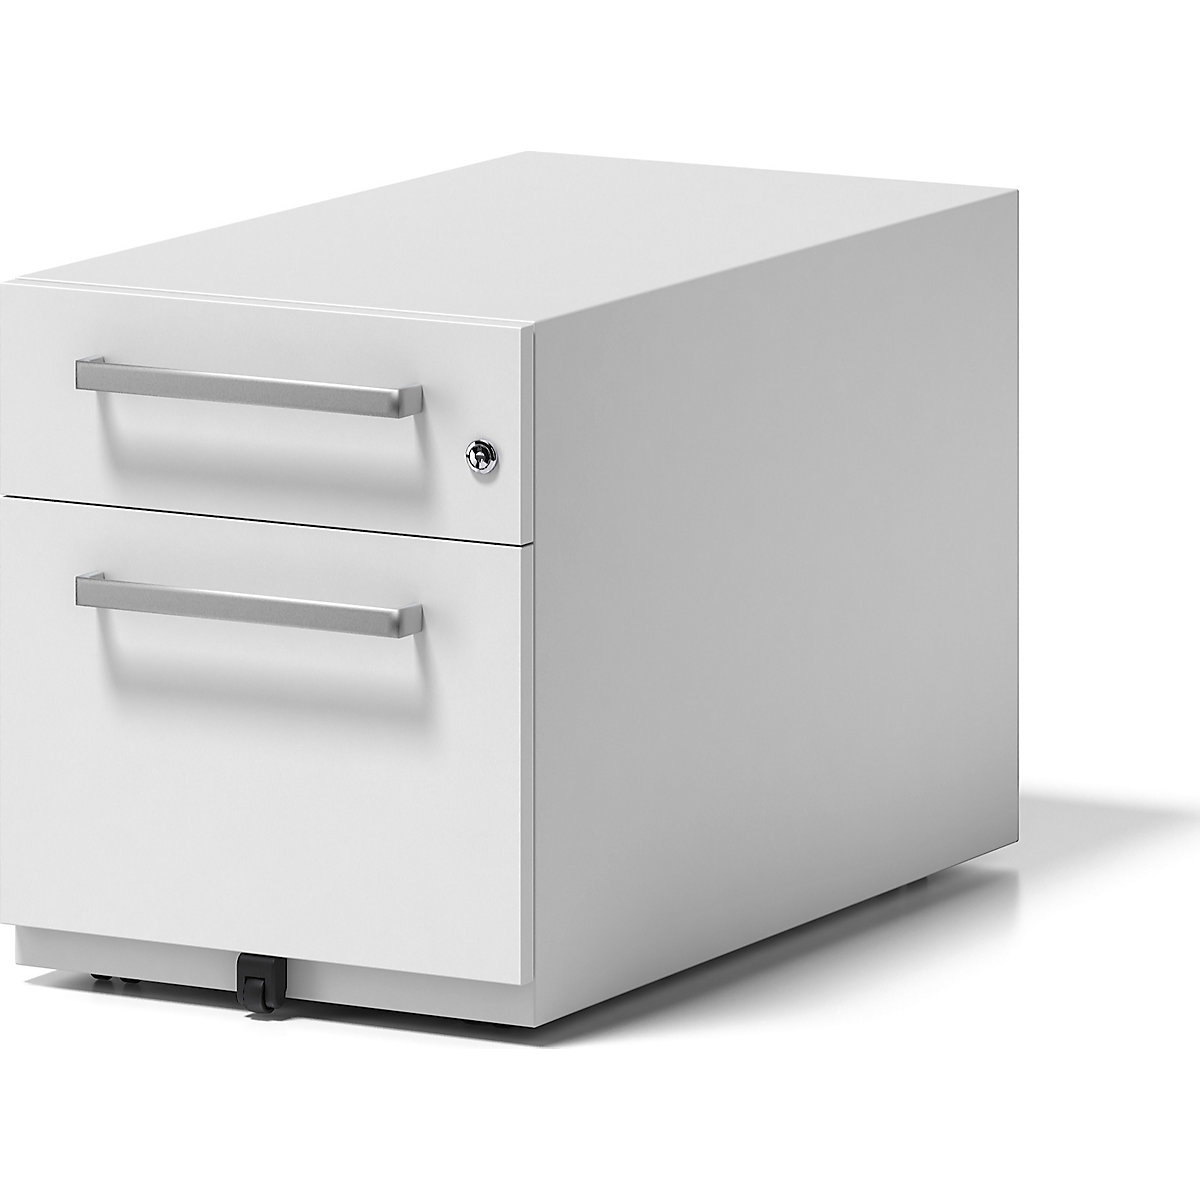 Pokretni ladičar Note™, s 1 elementom za vješanje registratora, 1 univerzalna ladica – BISLEY, VxŠxD 495 x 420 x 775 mm, s ručicom, u prometno bijeloj boji-8